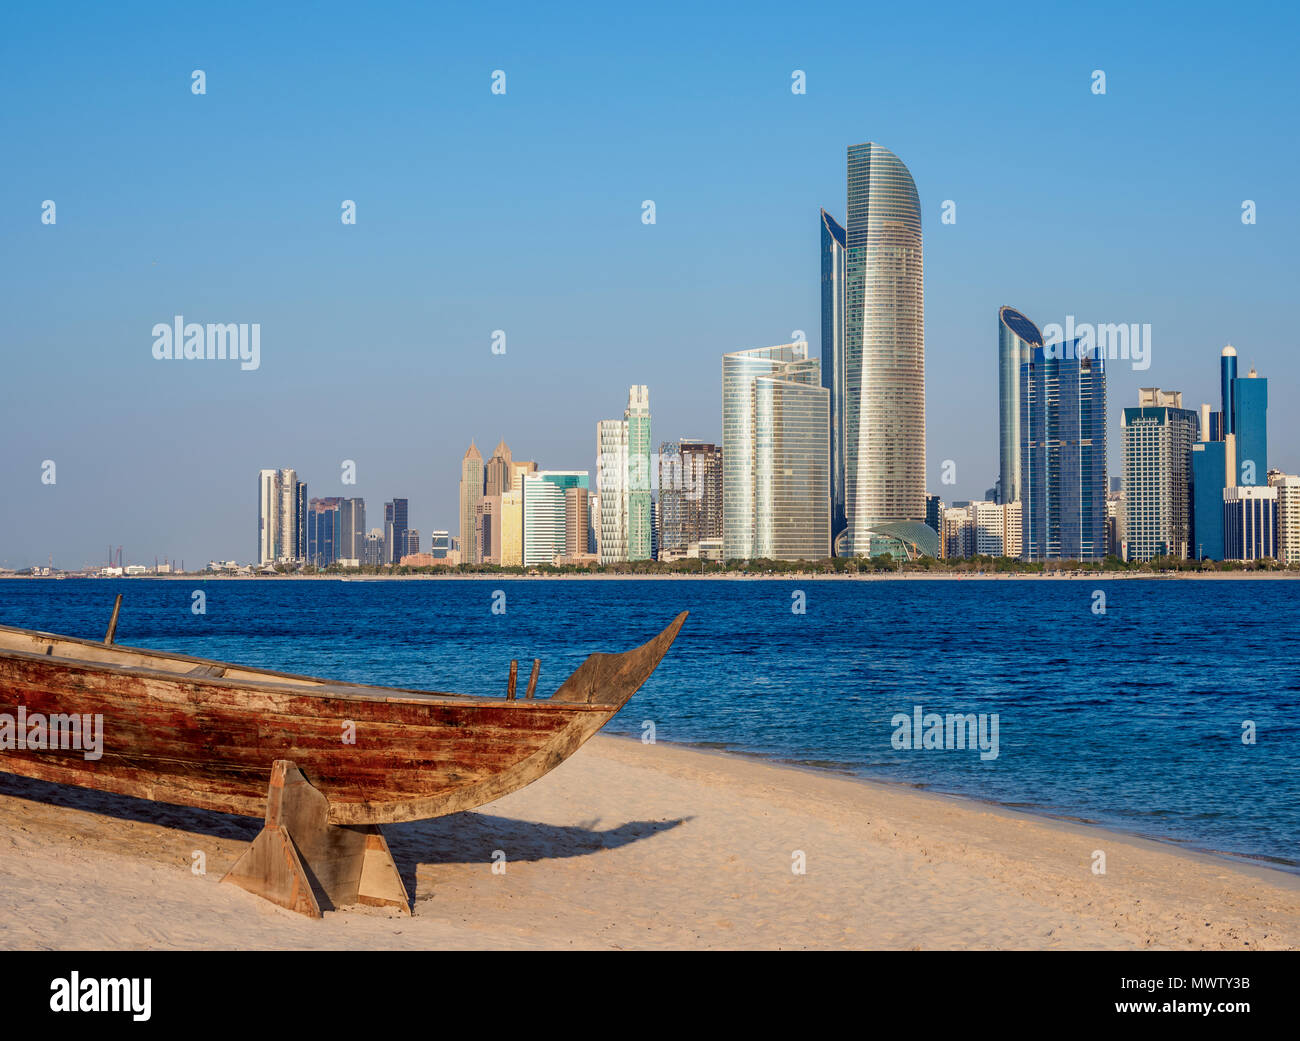 Traditionelle Boot im Heritage Village mit Sicht auf die City Skyline im Hintergrund, Abu Dhabi, Vereinigte Arabische Emirate, Naher Osten Stockfoto